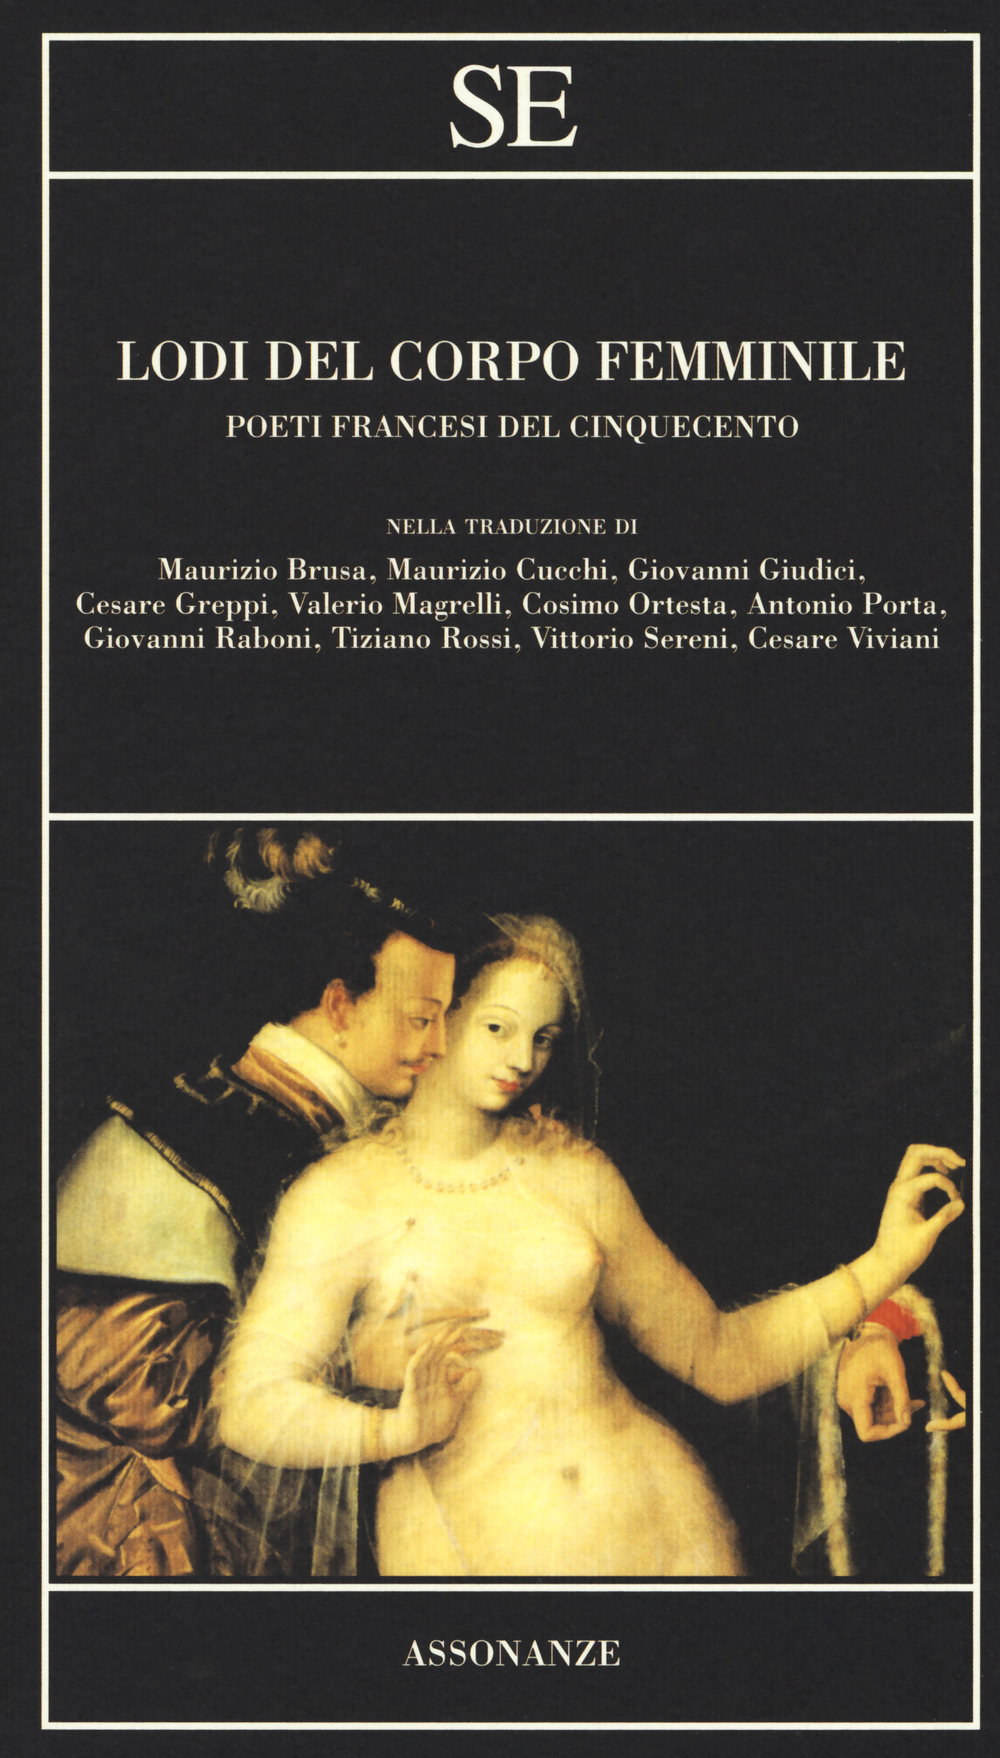 Image of Lodi del corpo femminile. Poeti francesi del Cinquecento. Testo francese a fronte